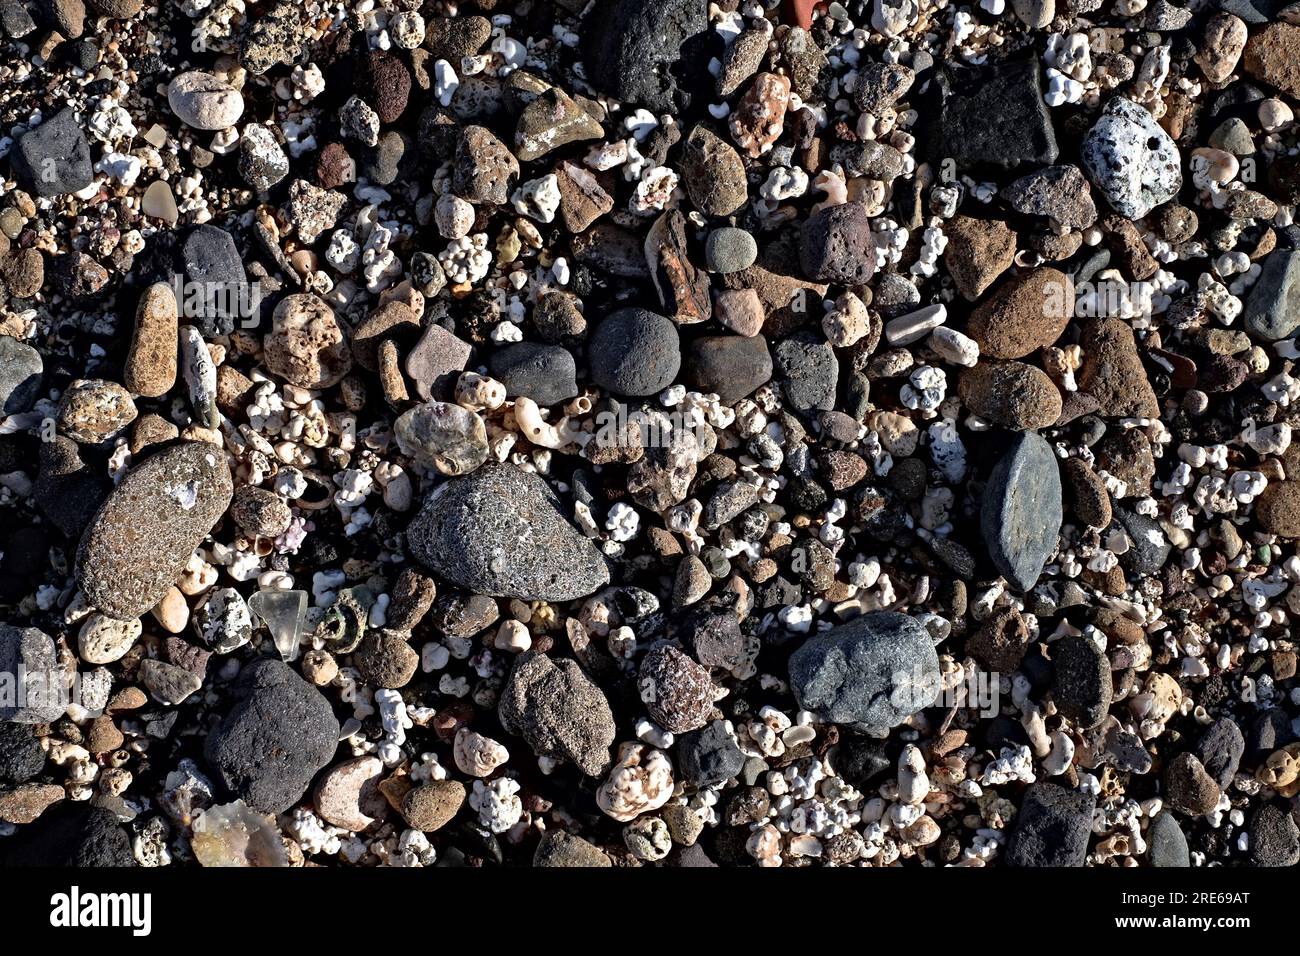 Motivo di pietre da spiaggia assortite bianche, grigie e nere, immagine a basso contrasto e bassa saturazione. Foto Stock